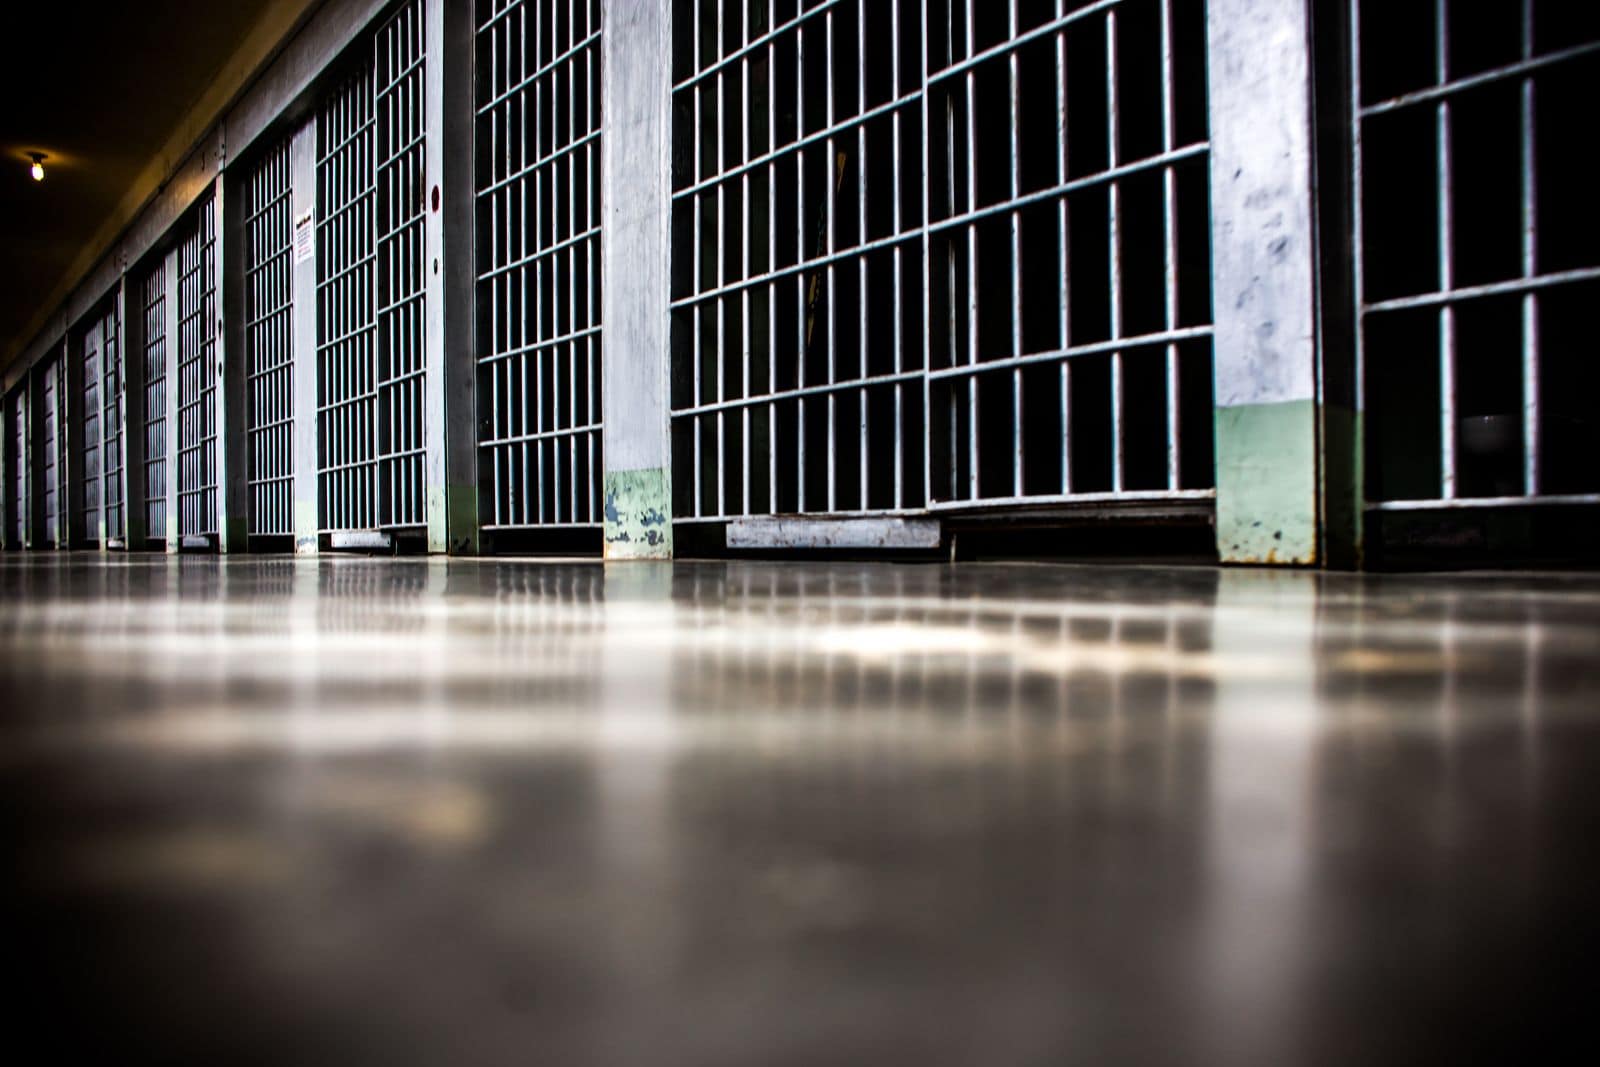 Un couloir de prison (Photo Thomas Hawk / FlickR / cc)